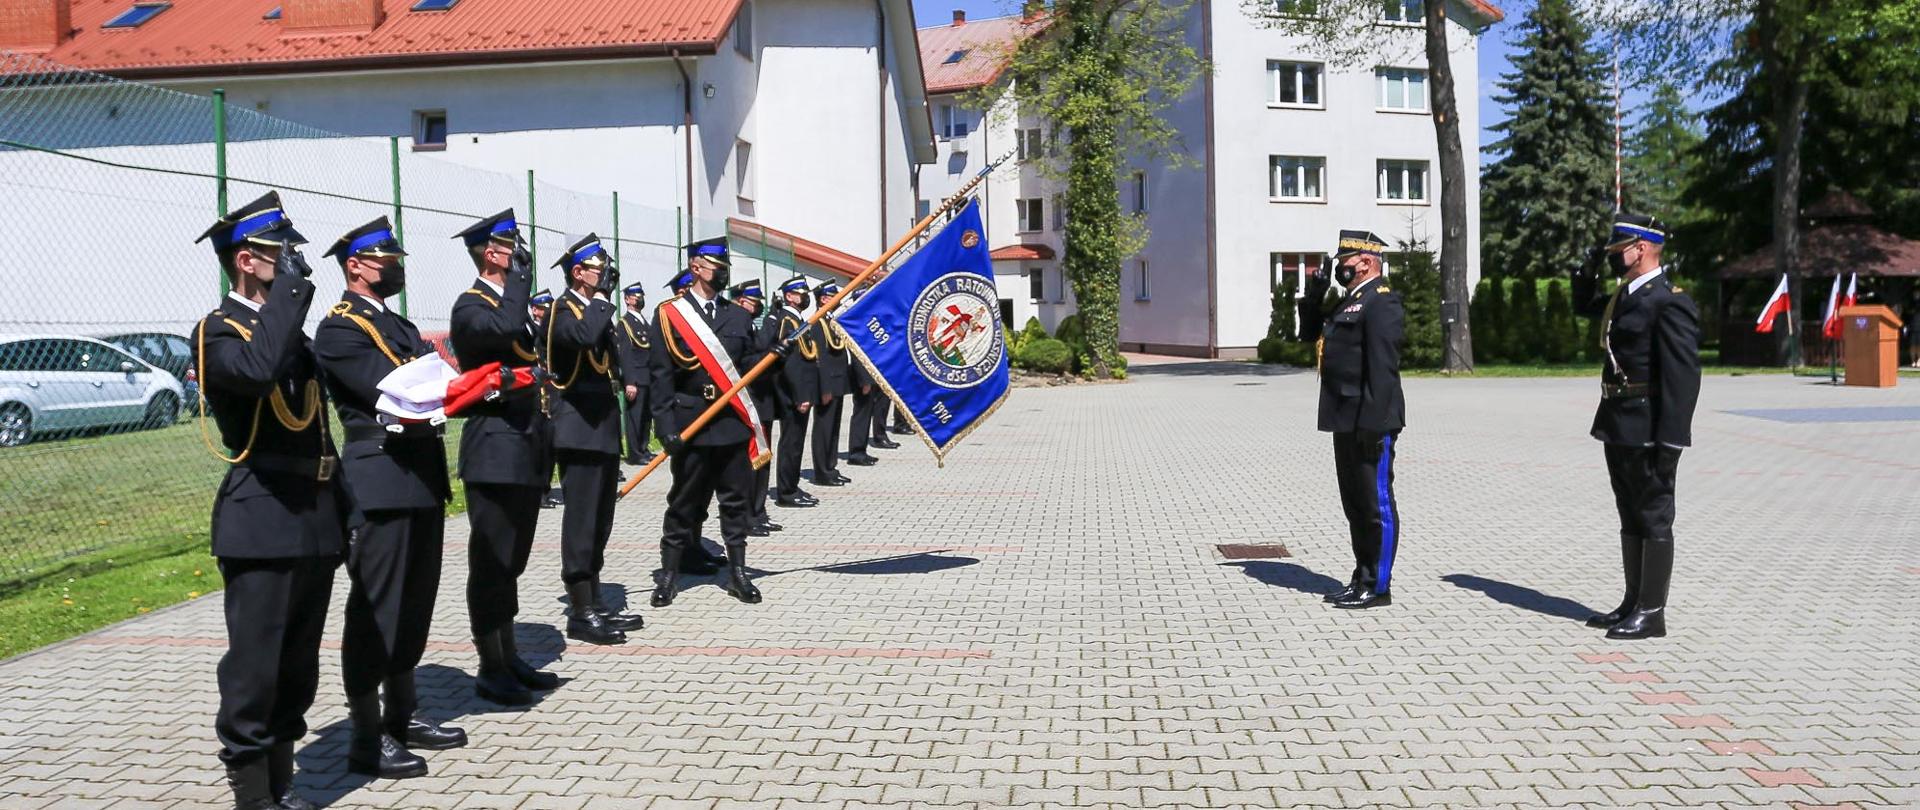 Podkarpacki Komendant Wojewódzki Państwowej Straży Pożarnej podczas przeglądu pododdziałów. Przywitanie ze sztandarem.